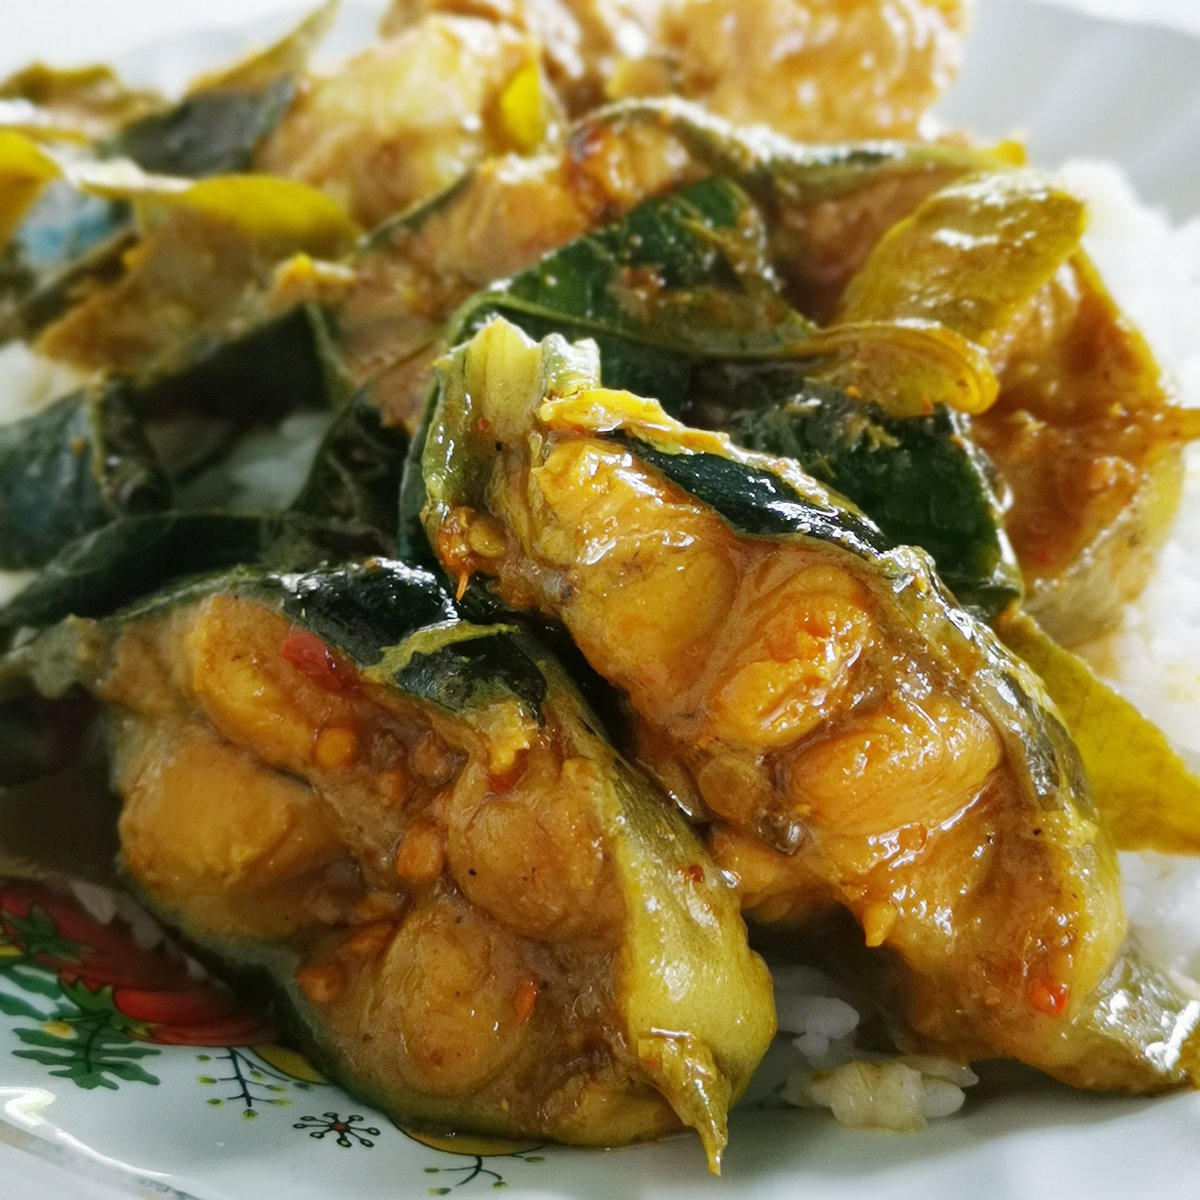 .

ปลาดุกผัดฉ่า ​: Spicy Catfish Stir-fry

#fish #chili #food #catfish #thaifood #delicious #foodstyling #vegetable #foodstylist #foodphoto #foodphotography #foodphotographer #foodoftheday #dessertoftheday #pictureoftheday #photooftheday #huawei #huaweimate20x #thailand